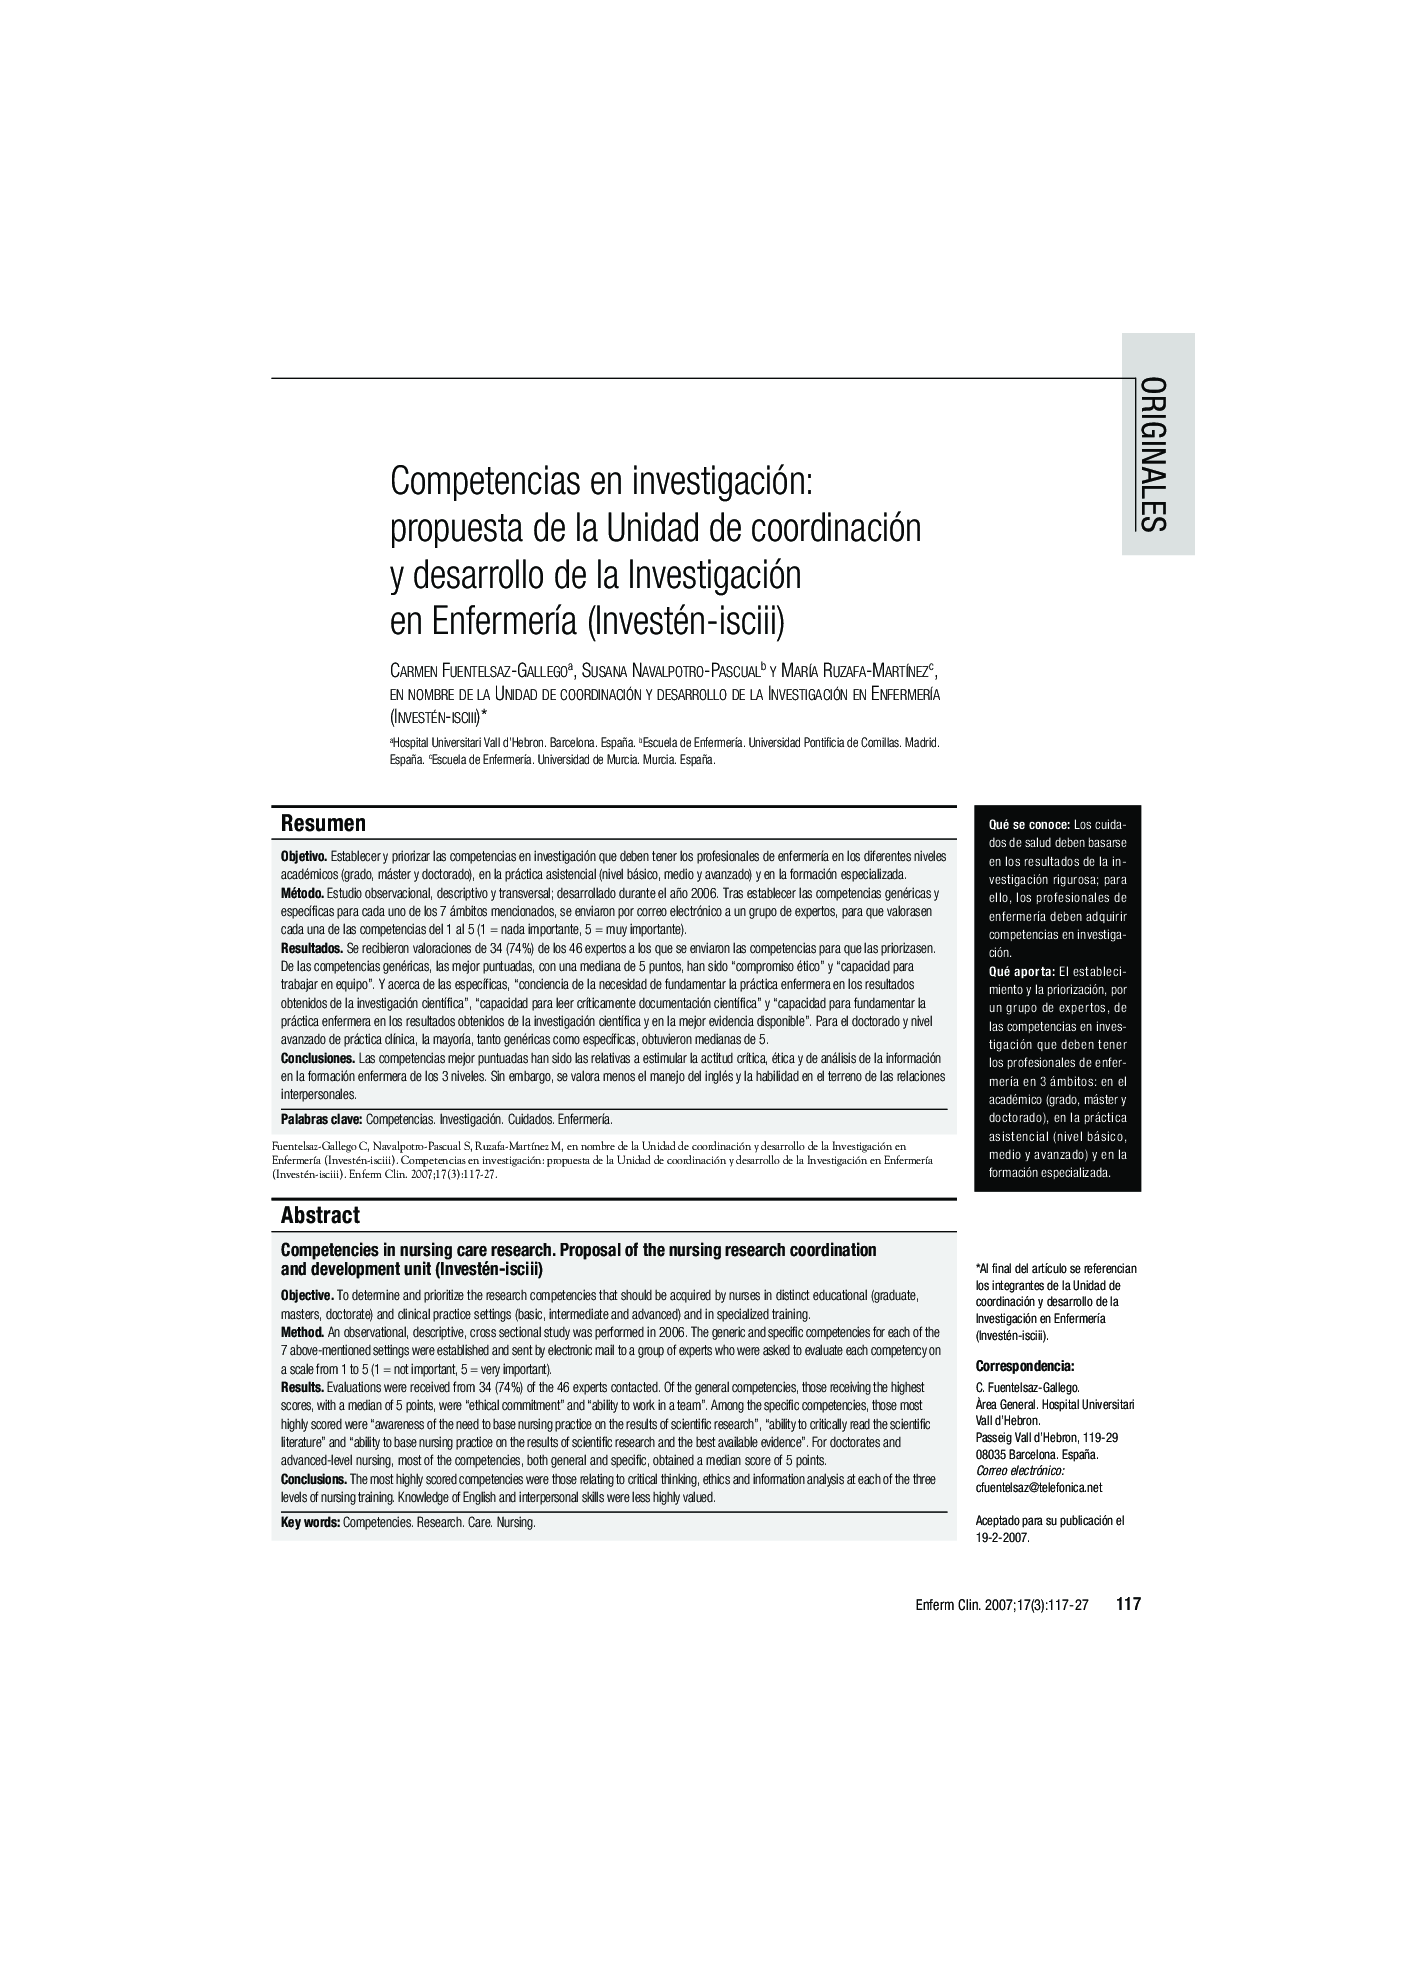 Competencias en investigación: propuesta de la Unidad de coordinación y desarrollo de la Investigación en EnfermerÃ­a (Investén-isciii)